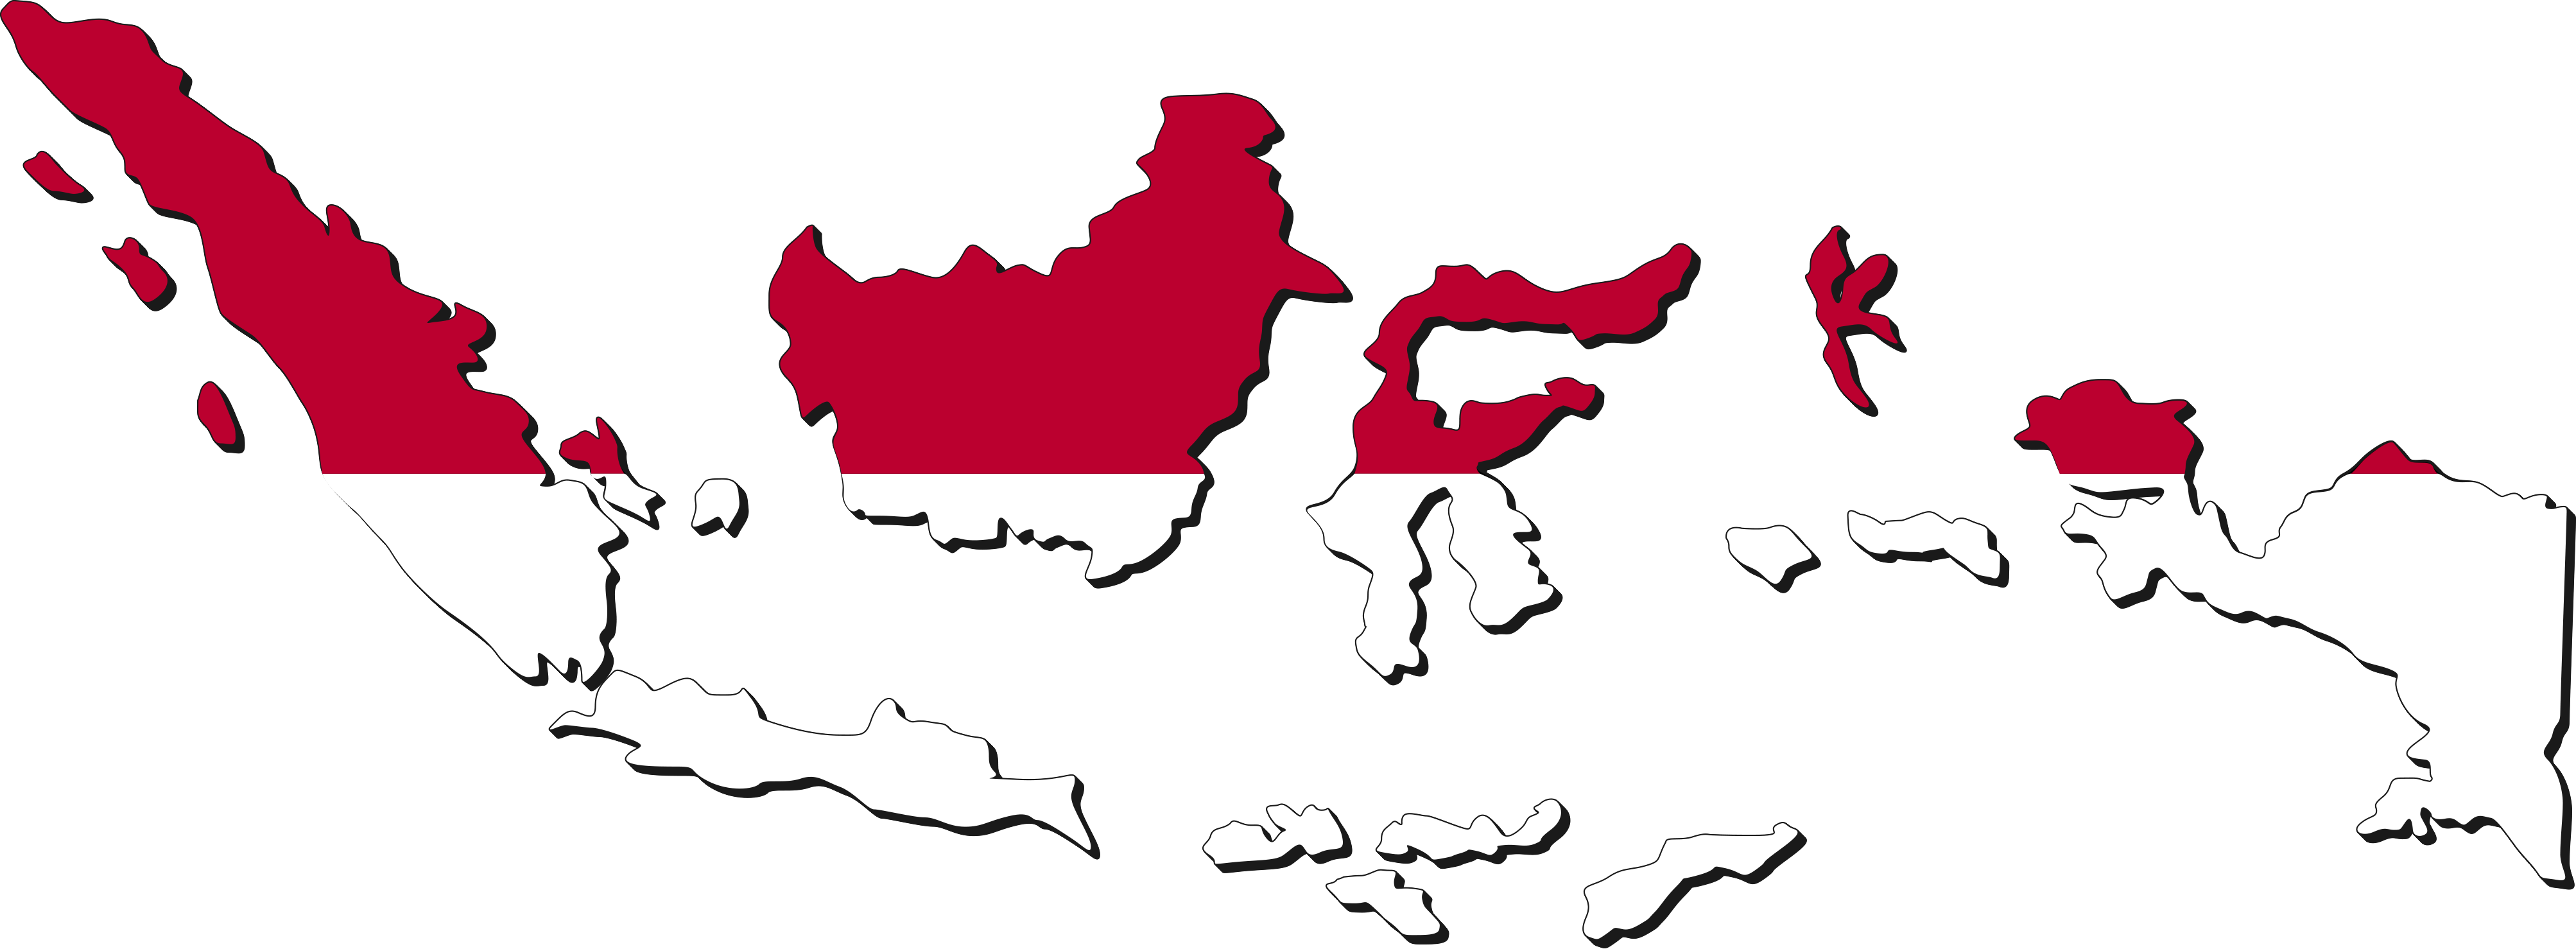 Indonesia: apa yang membuat/mencirikan orang Indonesia? - Galena